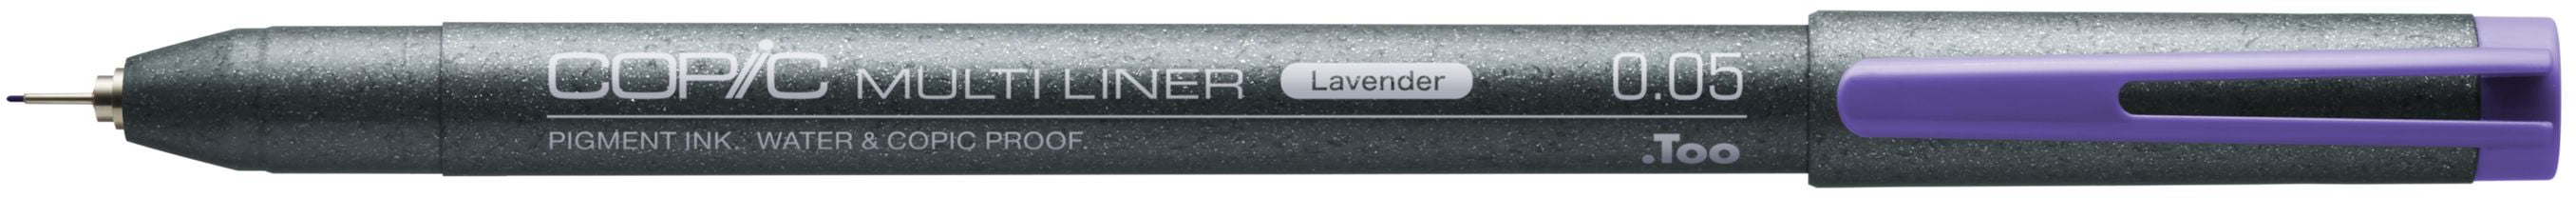 COPIC Multiliner 0.05mm 22075546 lavender lavender